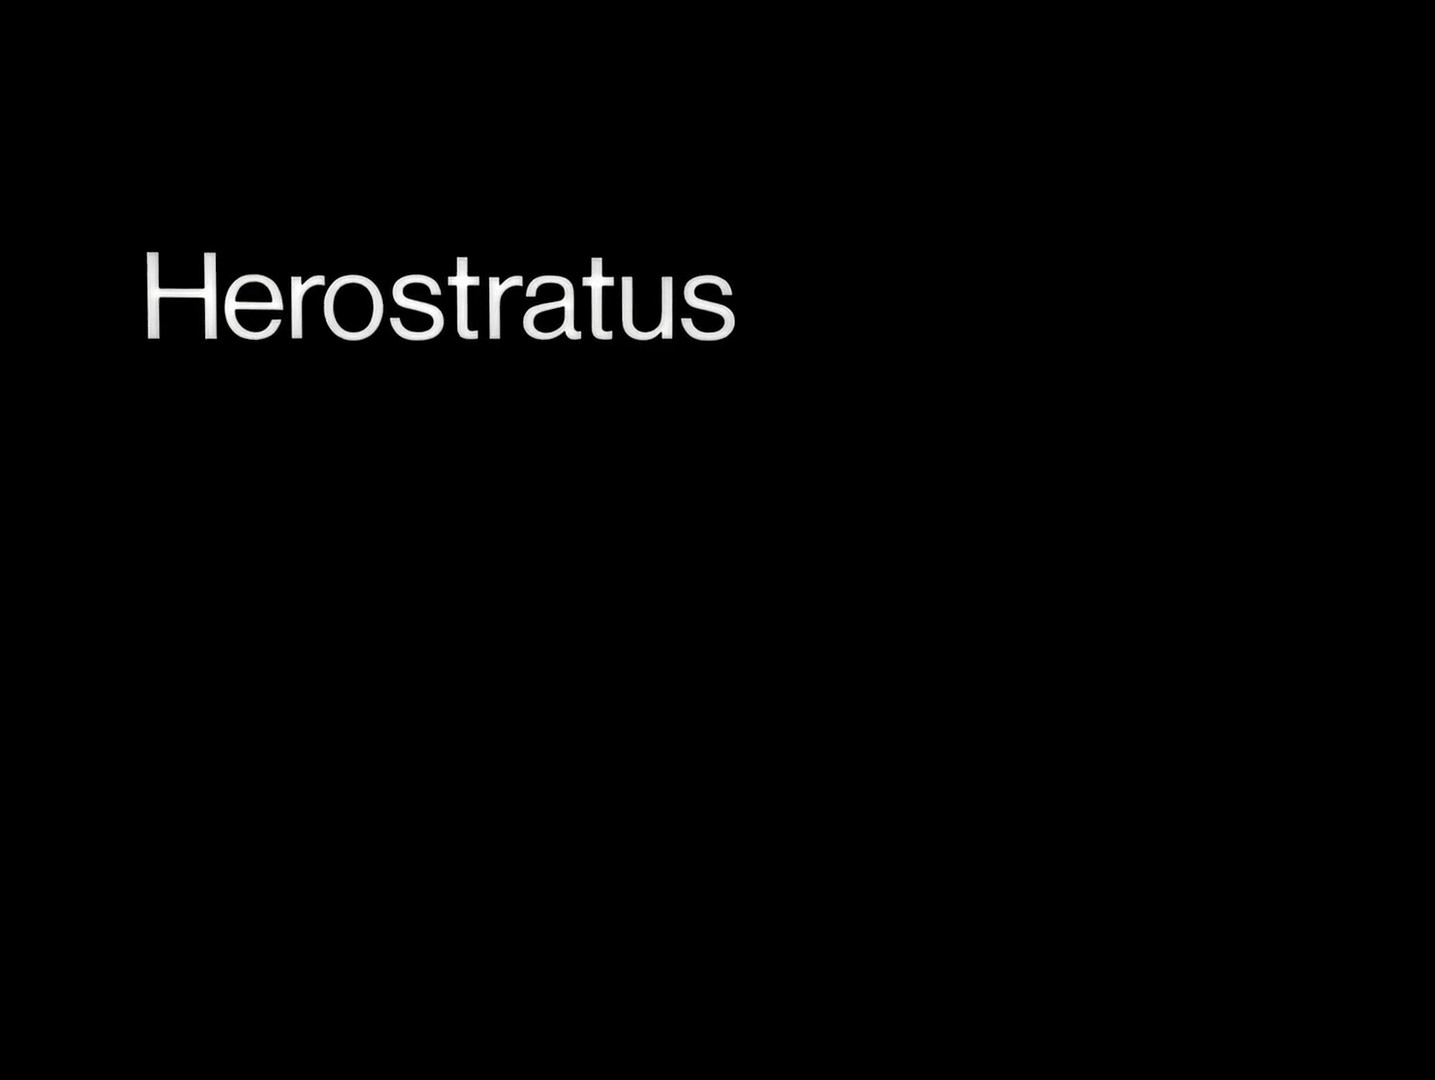 Herostratus-001.jpg